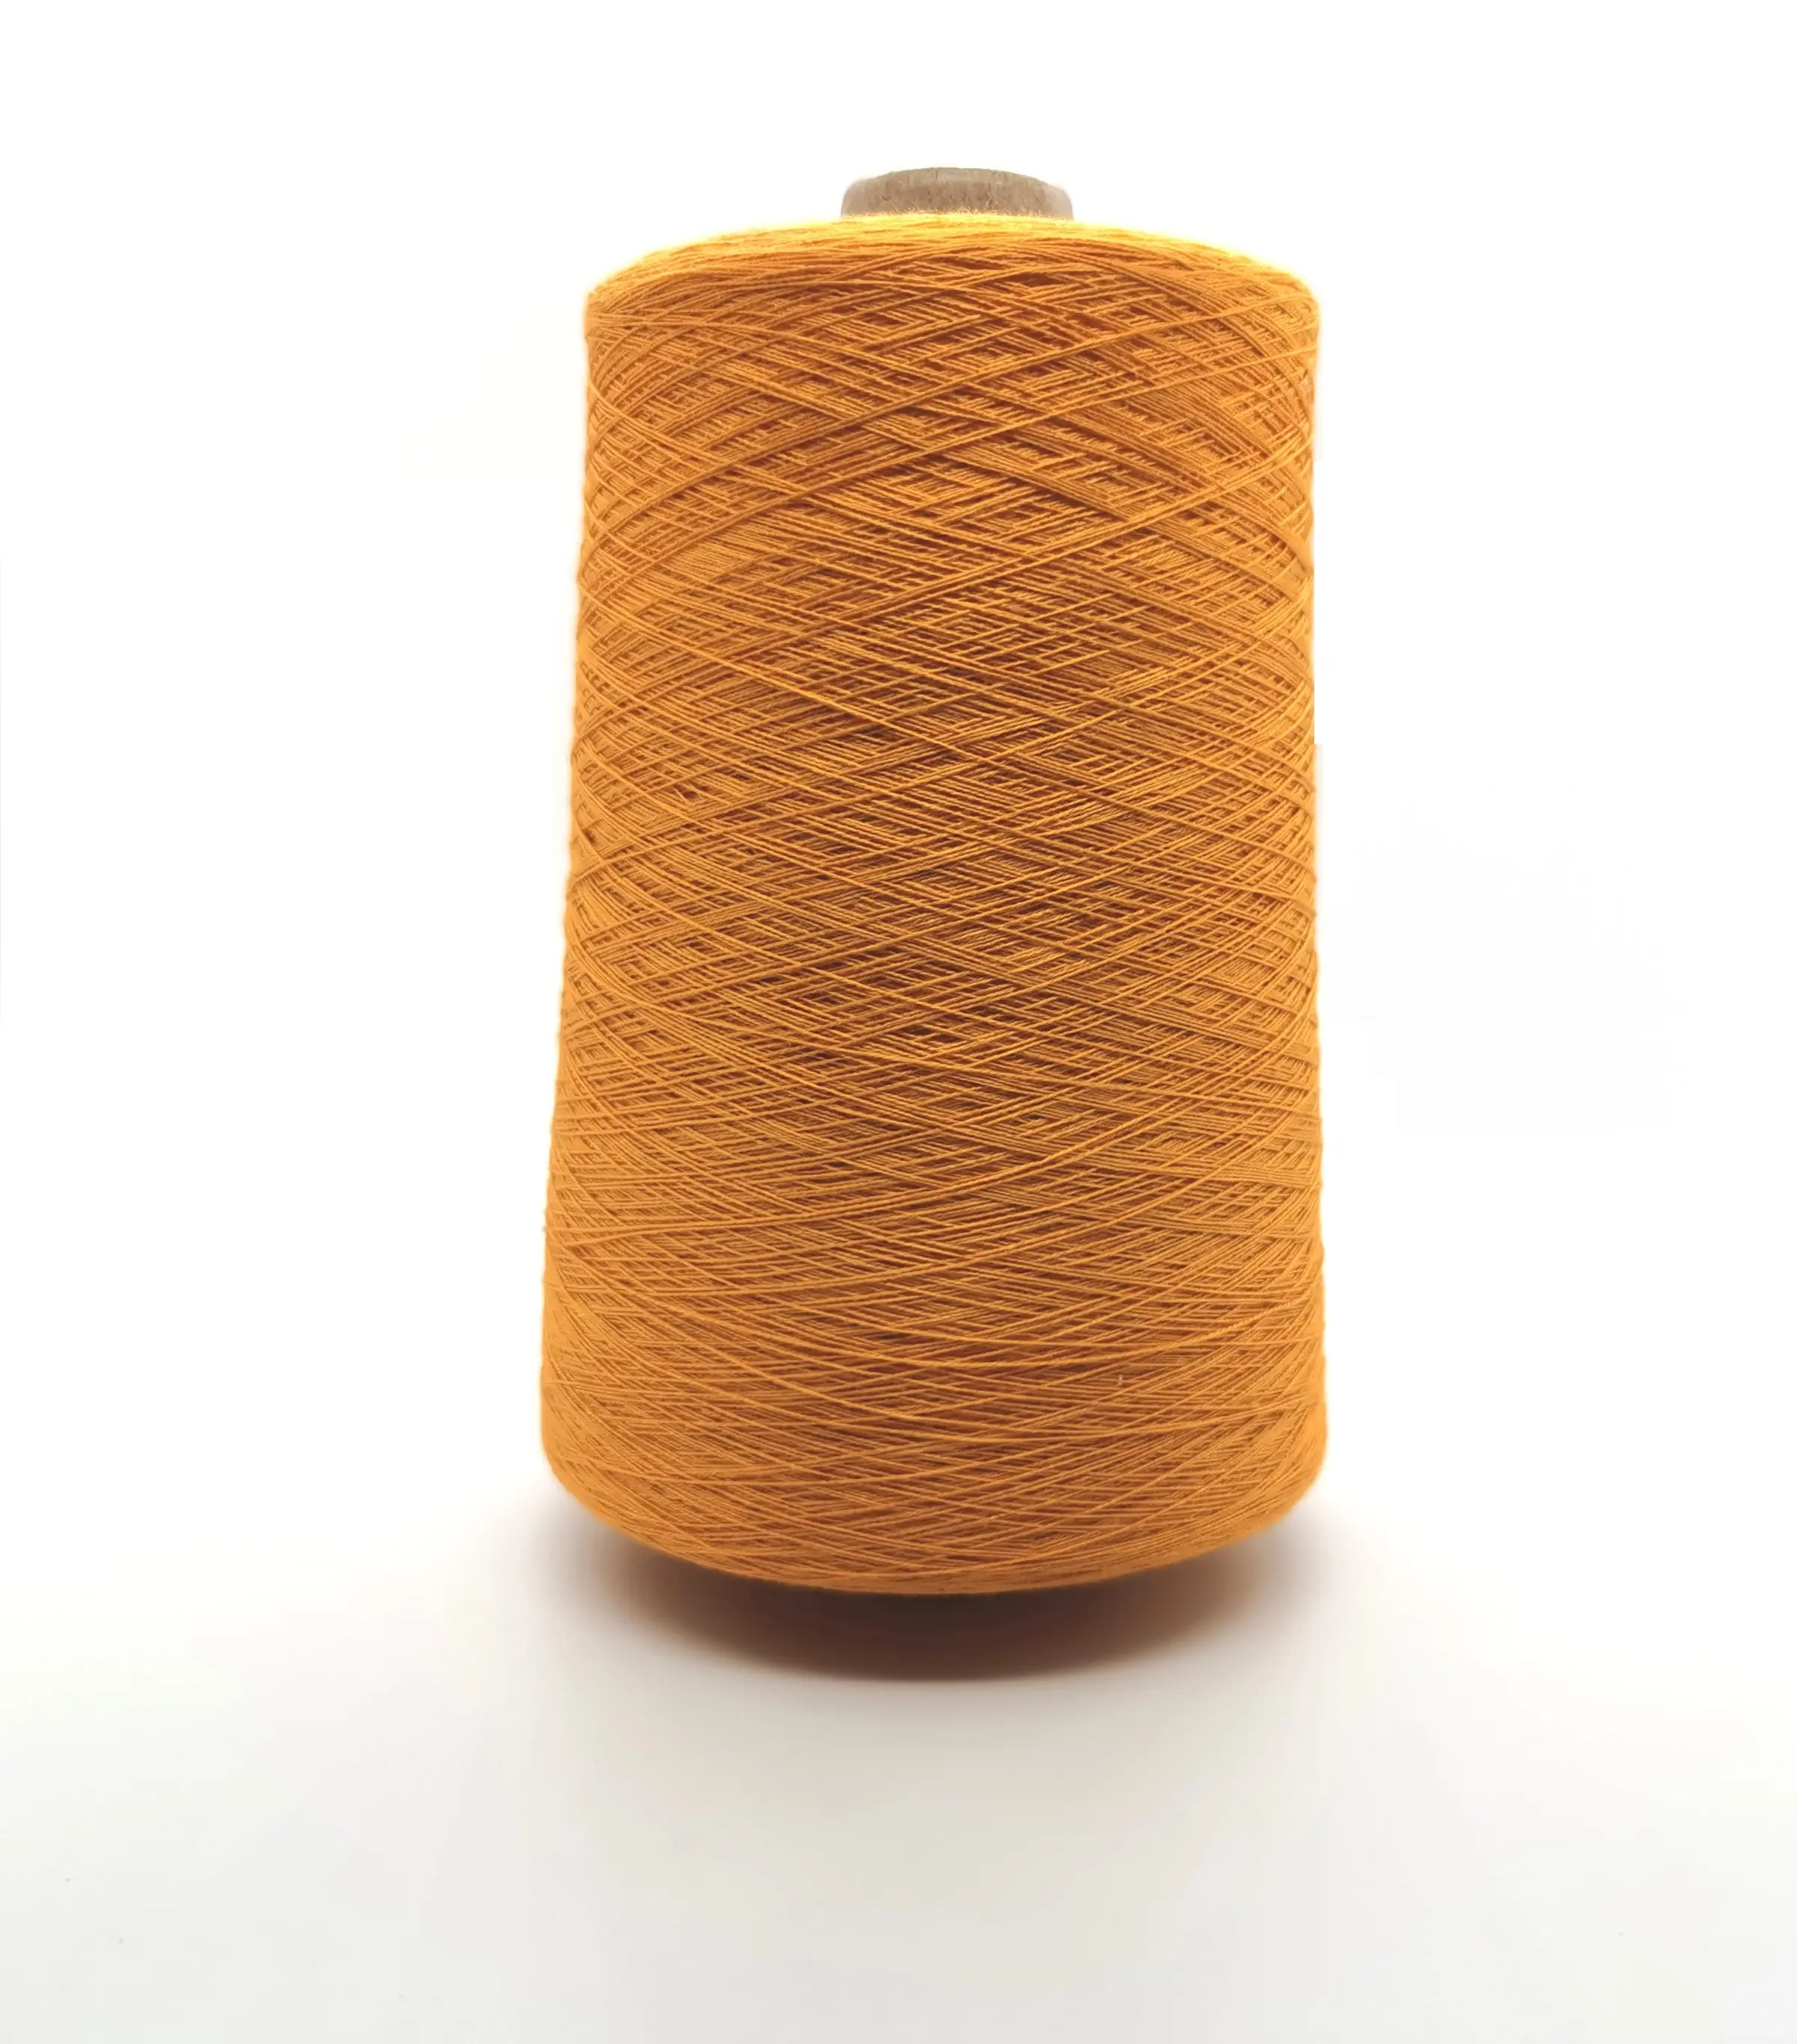 Dyed Viscose Ring Spun Yarn Ne 20/2 30/2 40/2 For Knitting / Weaving